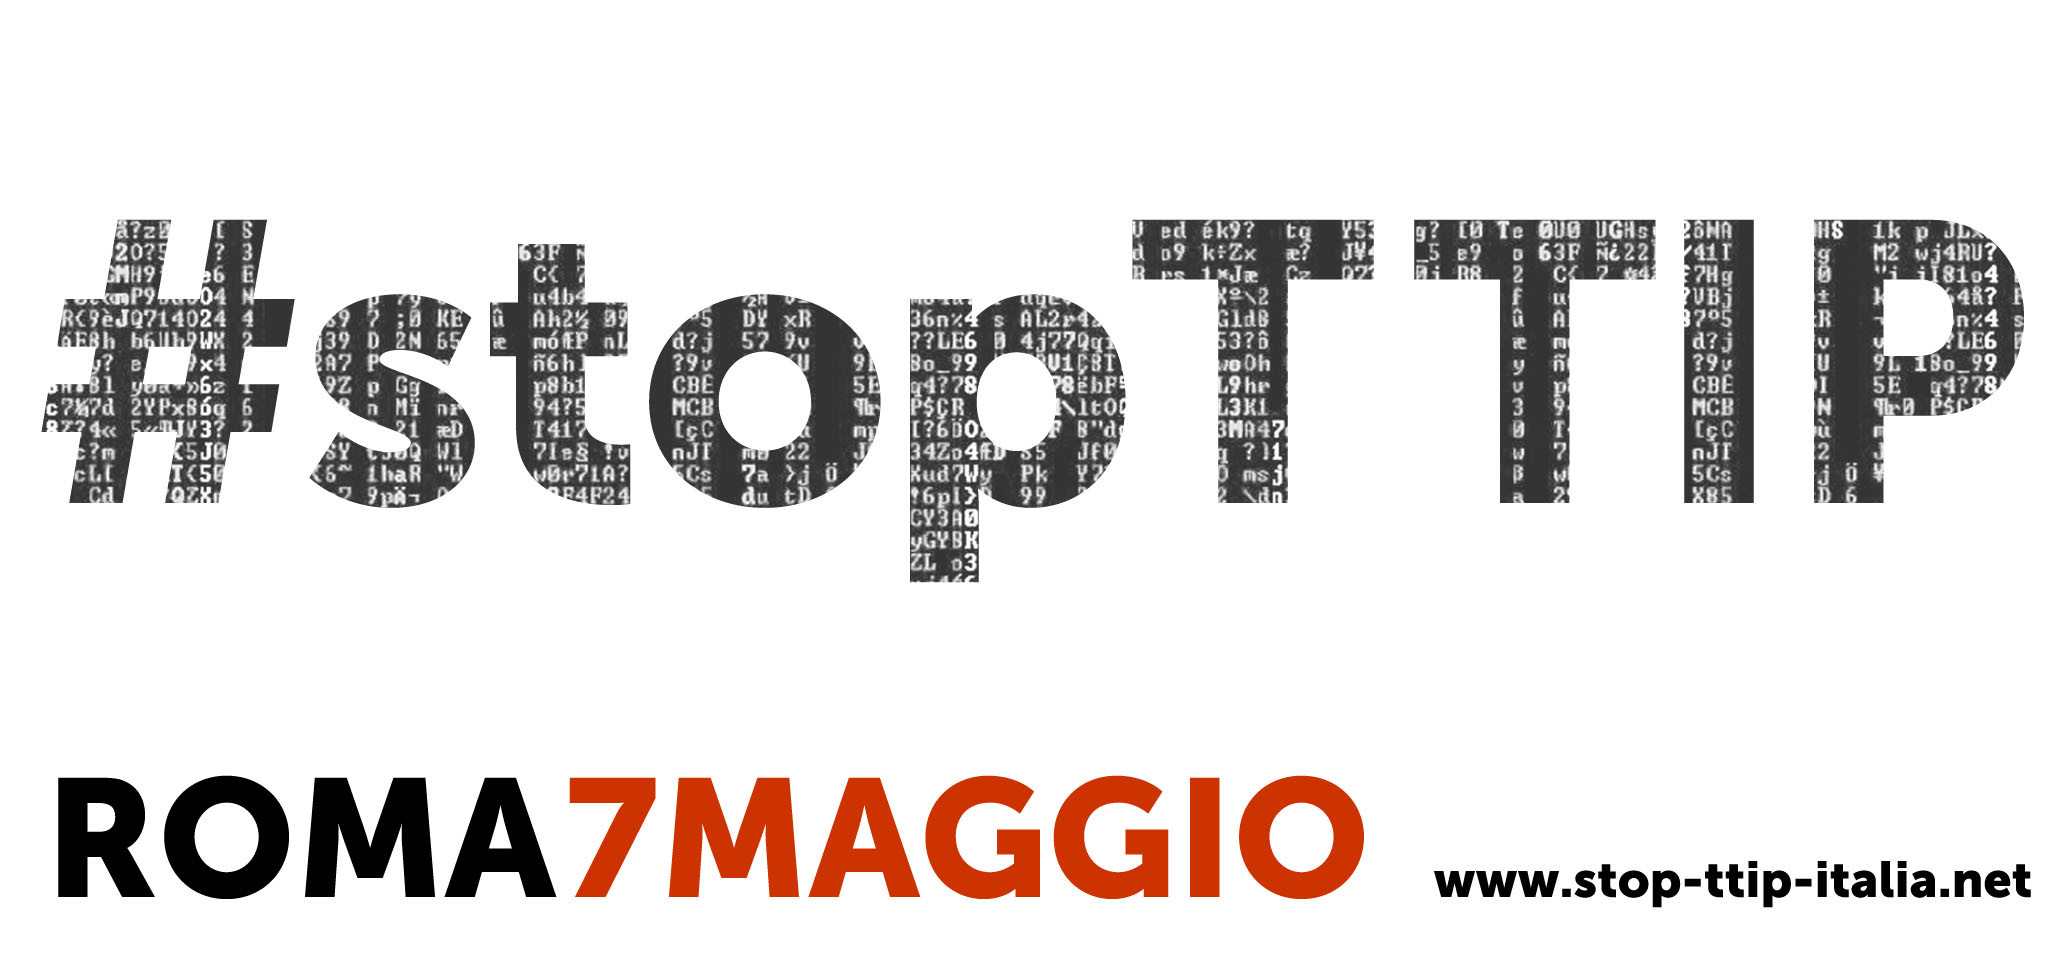 #stopTTIP